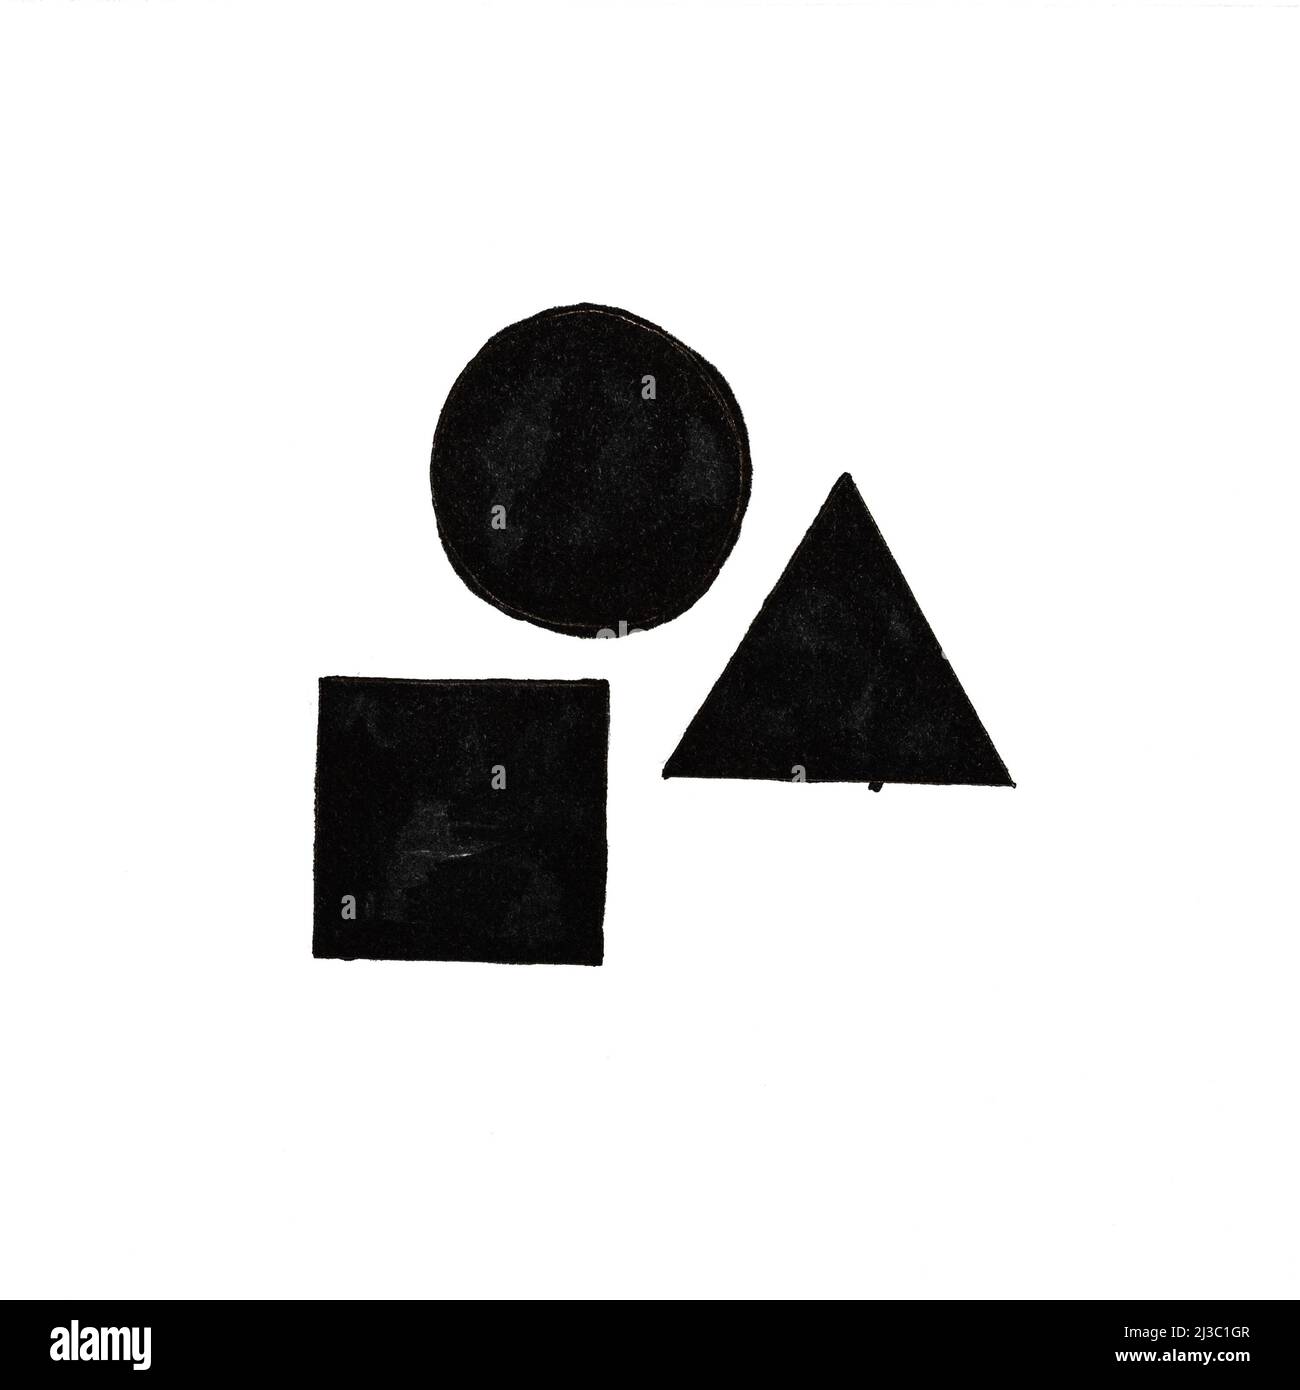 Abstrakte schwarz-weiße geometrische Komposition mit separatem Kreis, Dreieck und Quadrat, handgezeichnet mit schwarzer Farbe auf weißem Papier Stockfoto